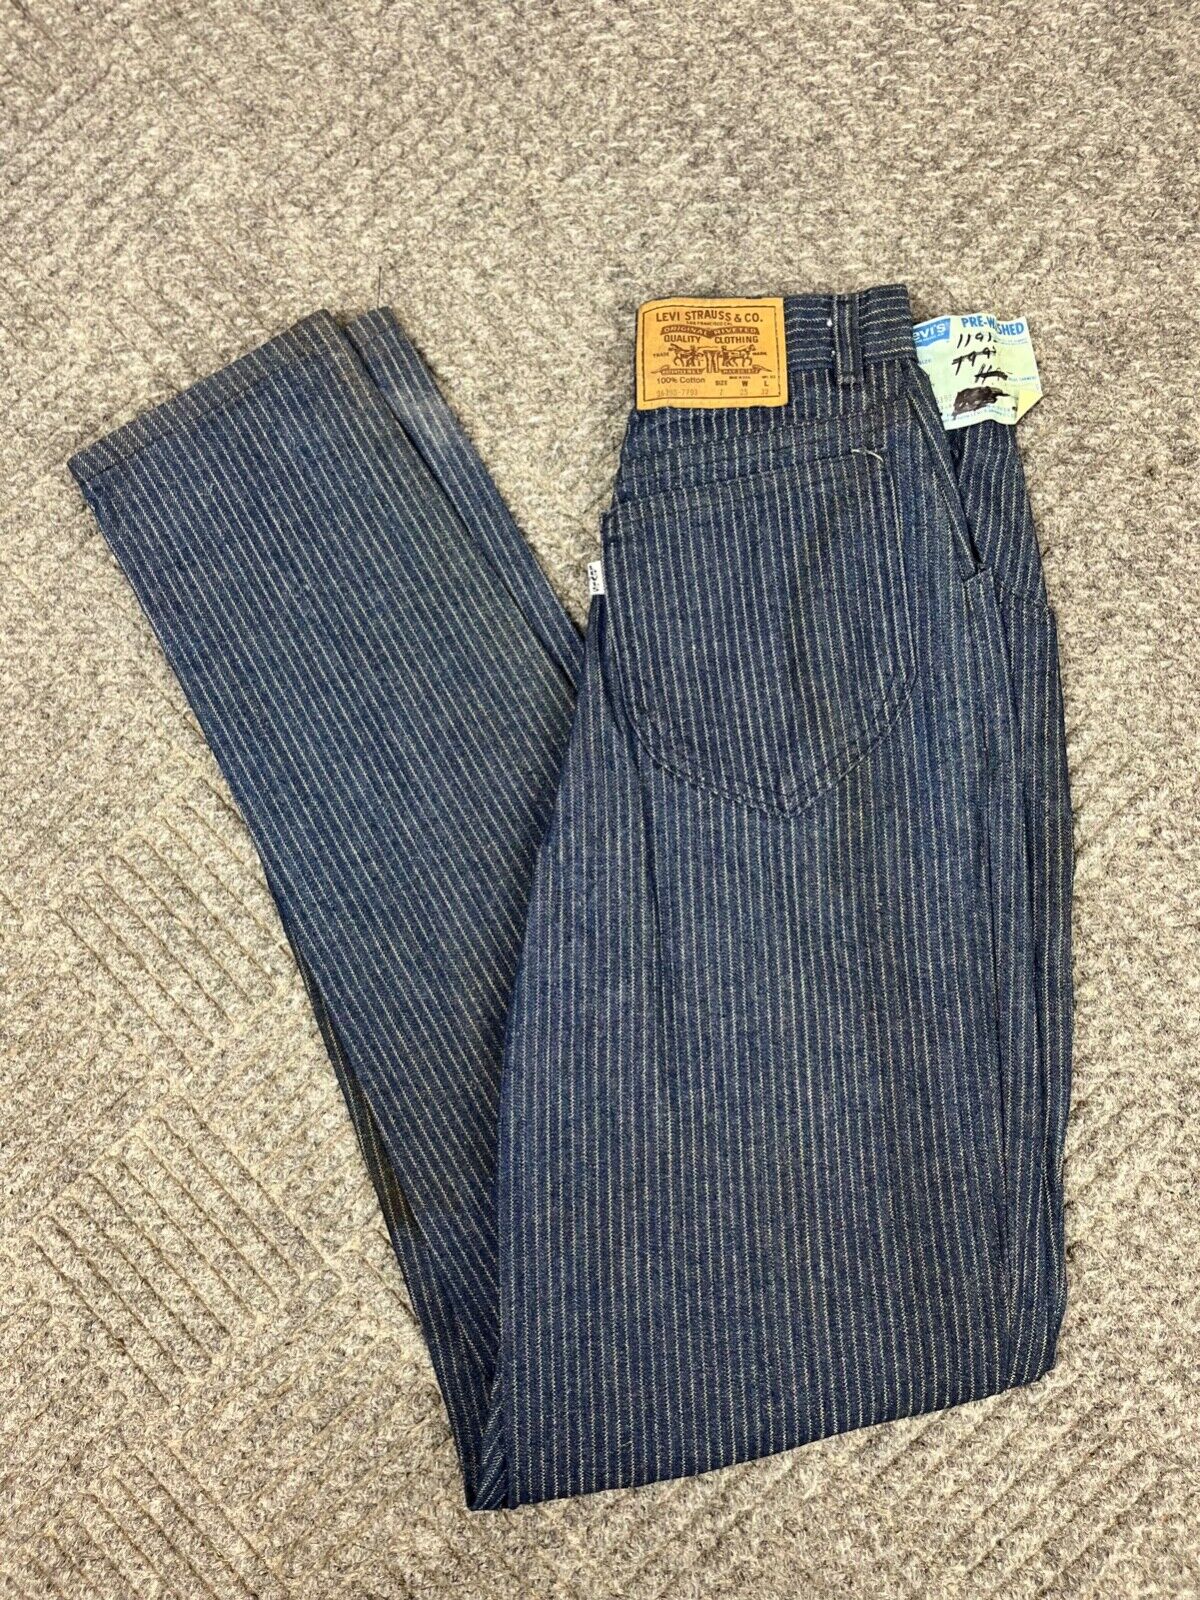 Vintage 80\'s Levis Denim Pinstripe Jeans Womens 25x32 Blue Dark Wash RARE NOS